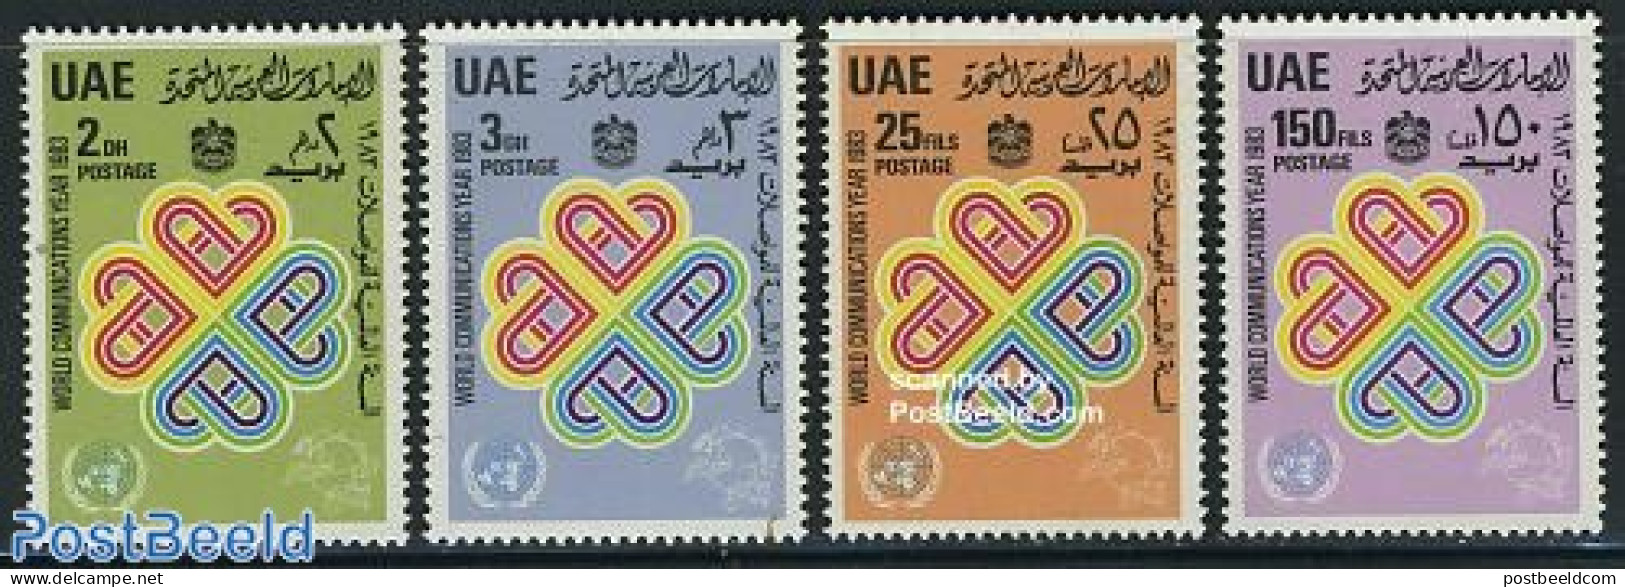 United Arab Emirates 1983 World Communication Year 4v, Mint NH, Science - Int. Communication Year 1983 - Telecommunica.. - Telecom